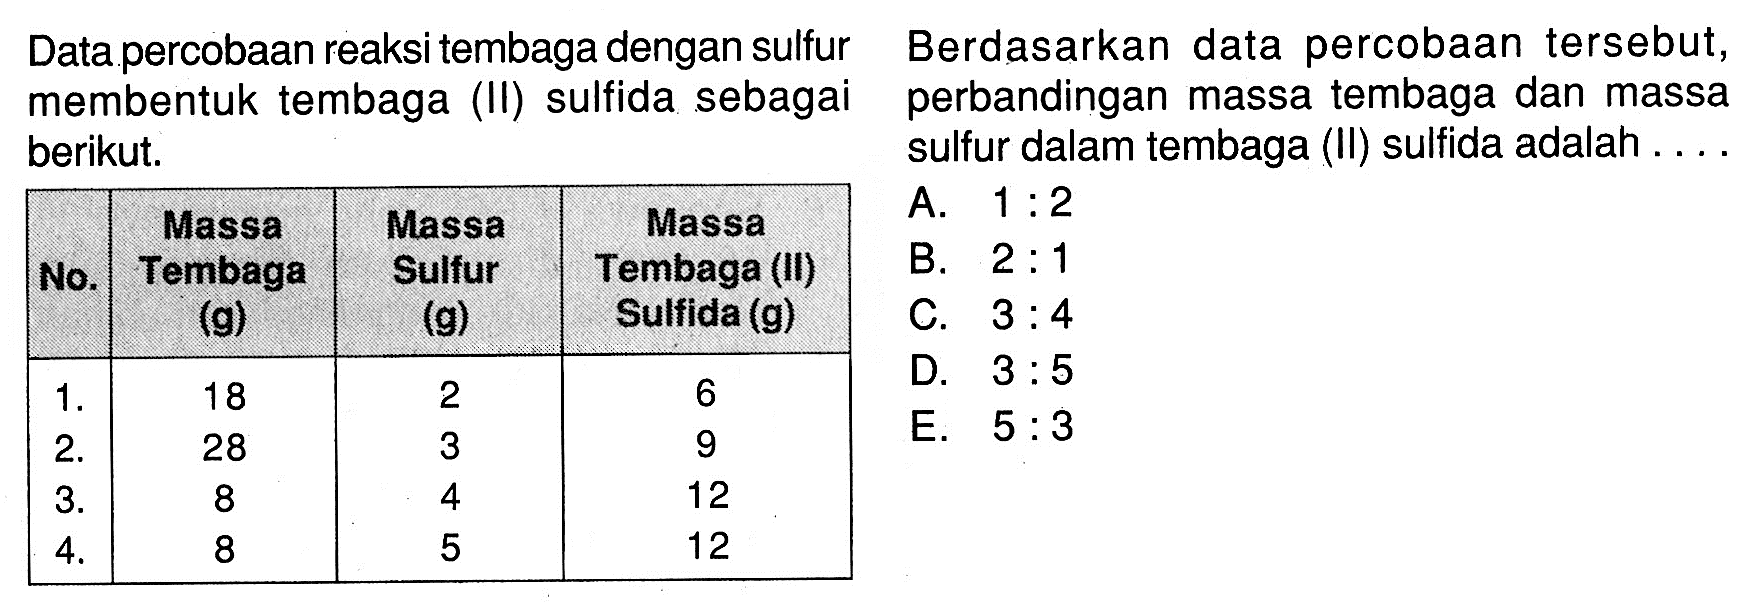 Data percobaan reaksi tembaga dengan sulfur membentuk tembaga (II) sulfida sebagai berikut.No. Massa Tembaga (g) Massa Sulfur (g) Massa Tembaga (II) Sulfida (g)1. 18 2 62. 28 3 93. 8 4 124. 8 5 12 Berdasarkan data percobaan tersebut, perbandingan massa tembaga dan massa sulfur dalam tembaga (II) sulfida adalah ....